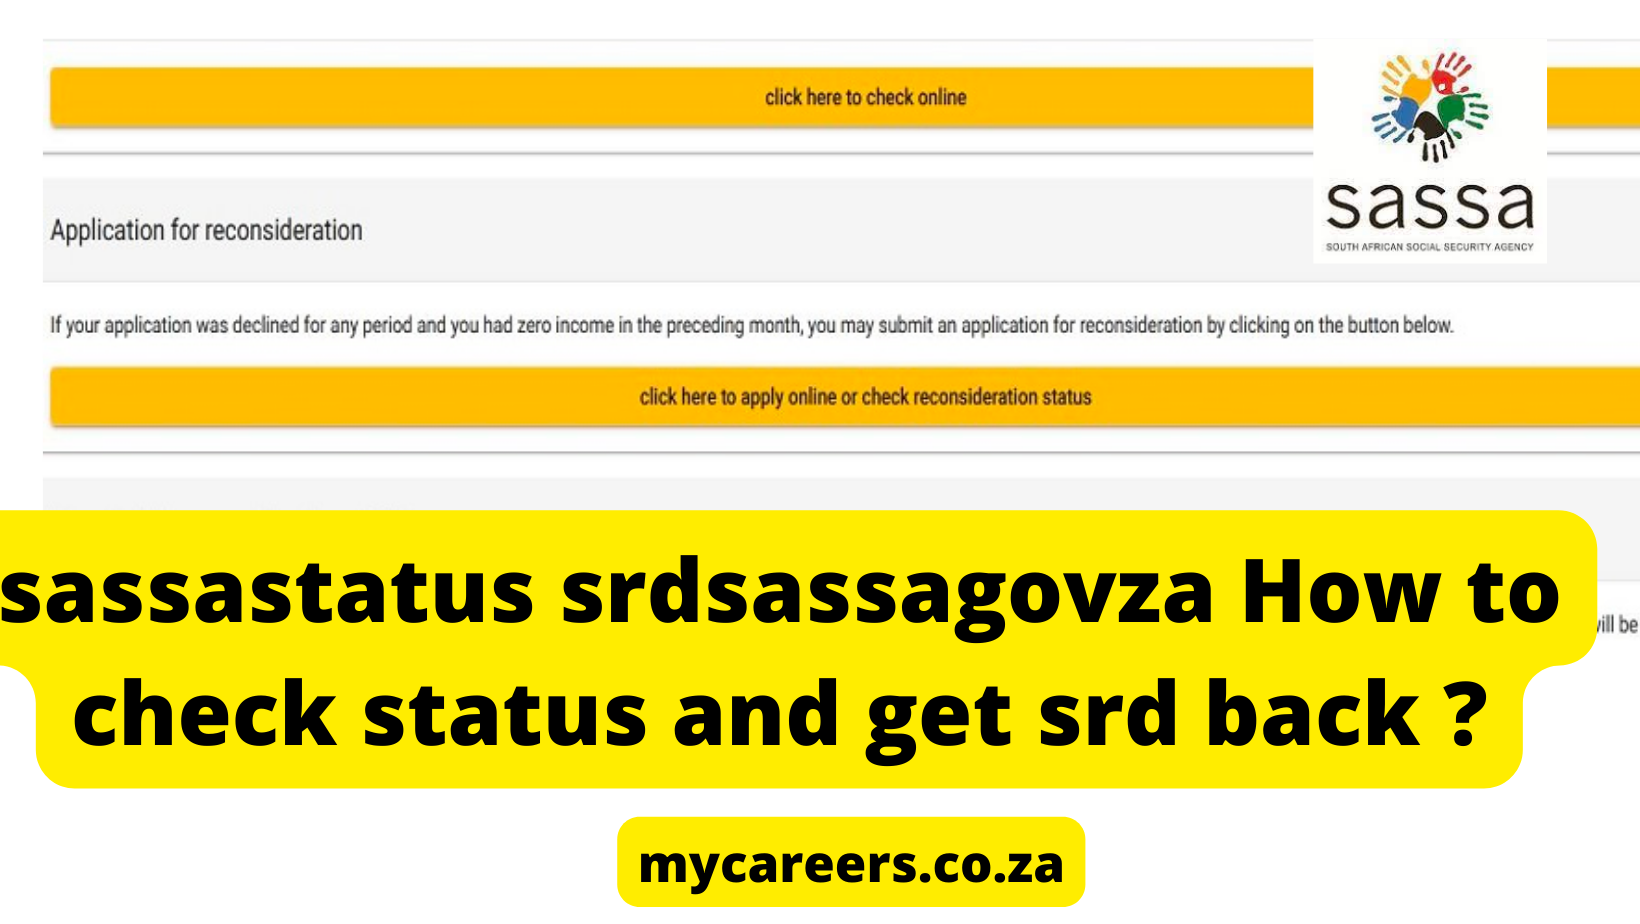 How to check status and get srd back sassa status -srdsassagovza